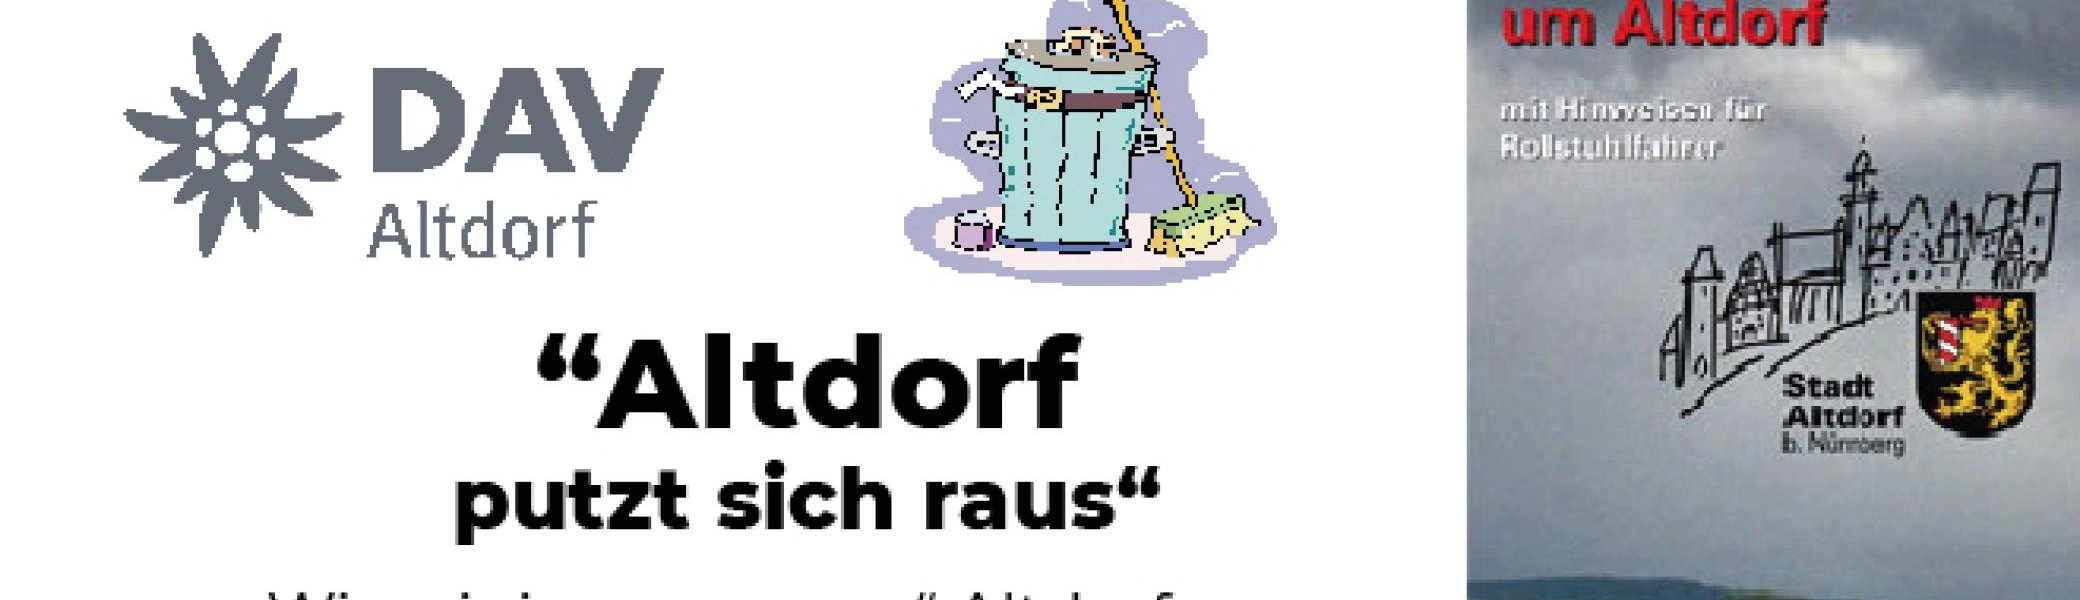 Altdorf putzt sich raus | © DAV Sektion Altdorf